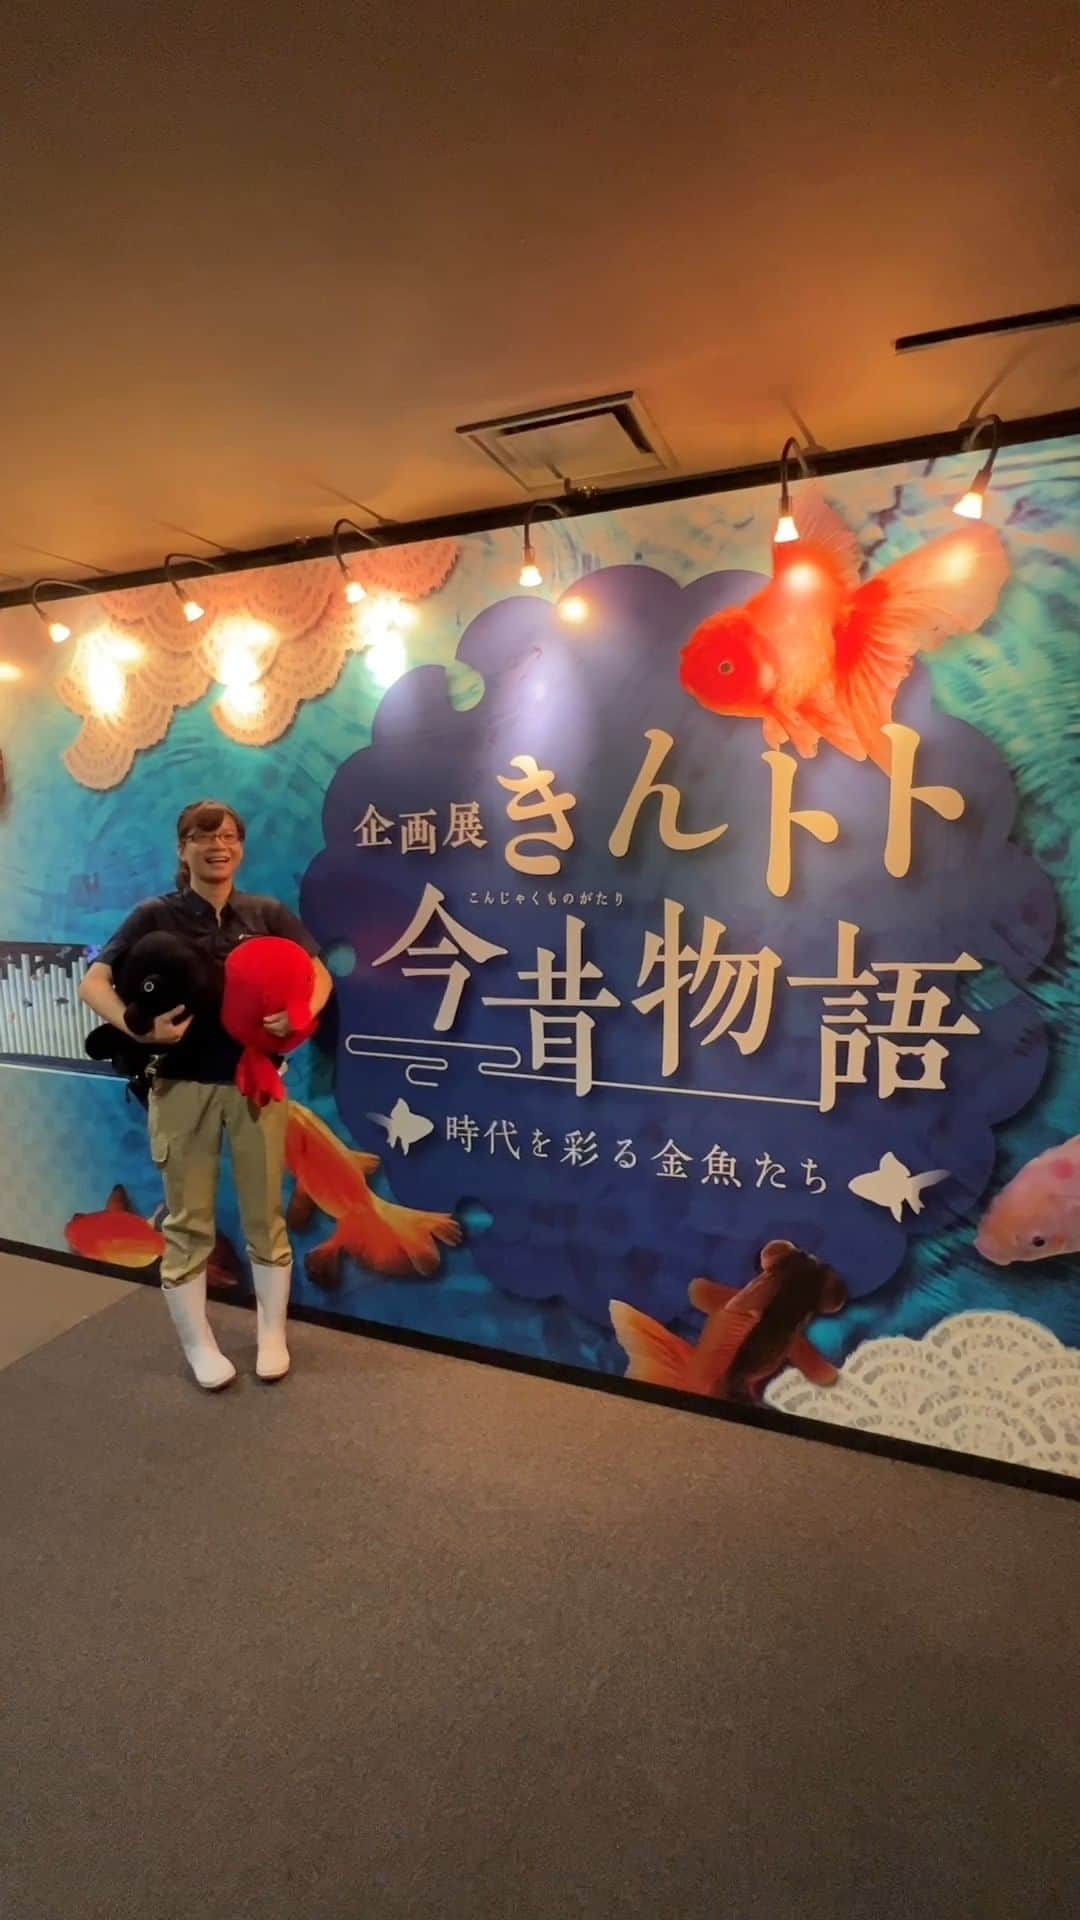 世界淡水魚園水族館 アクア・トト ぎふのインスタグラム